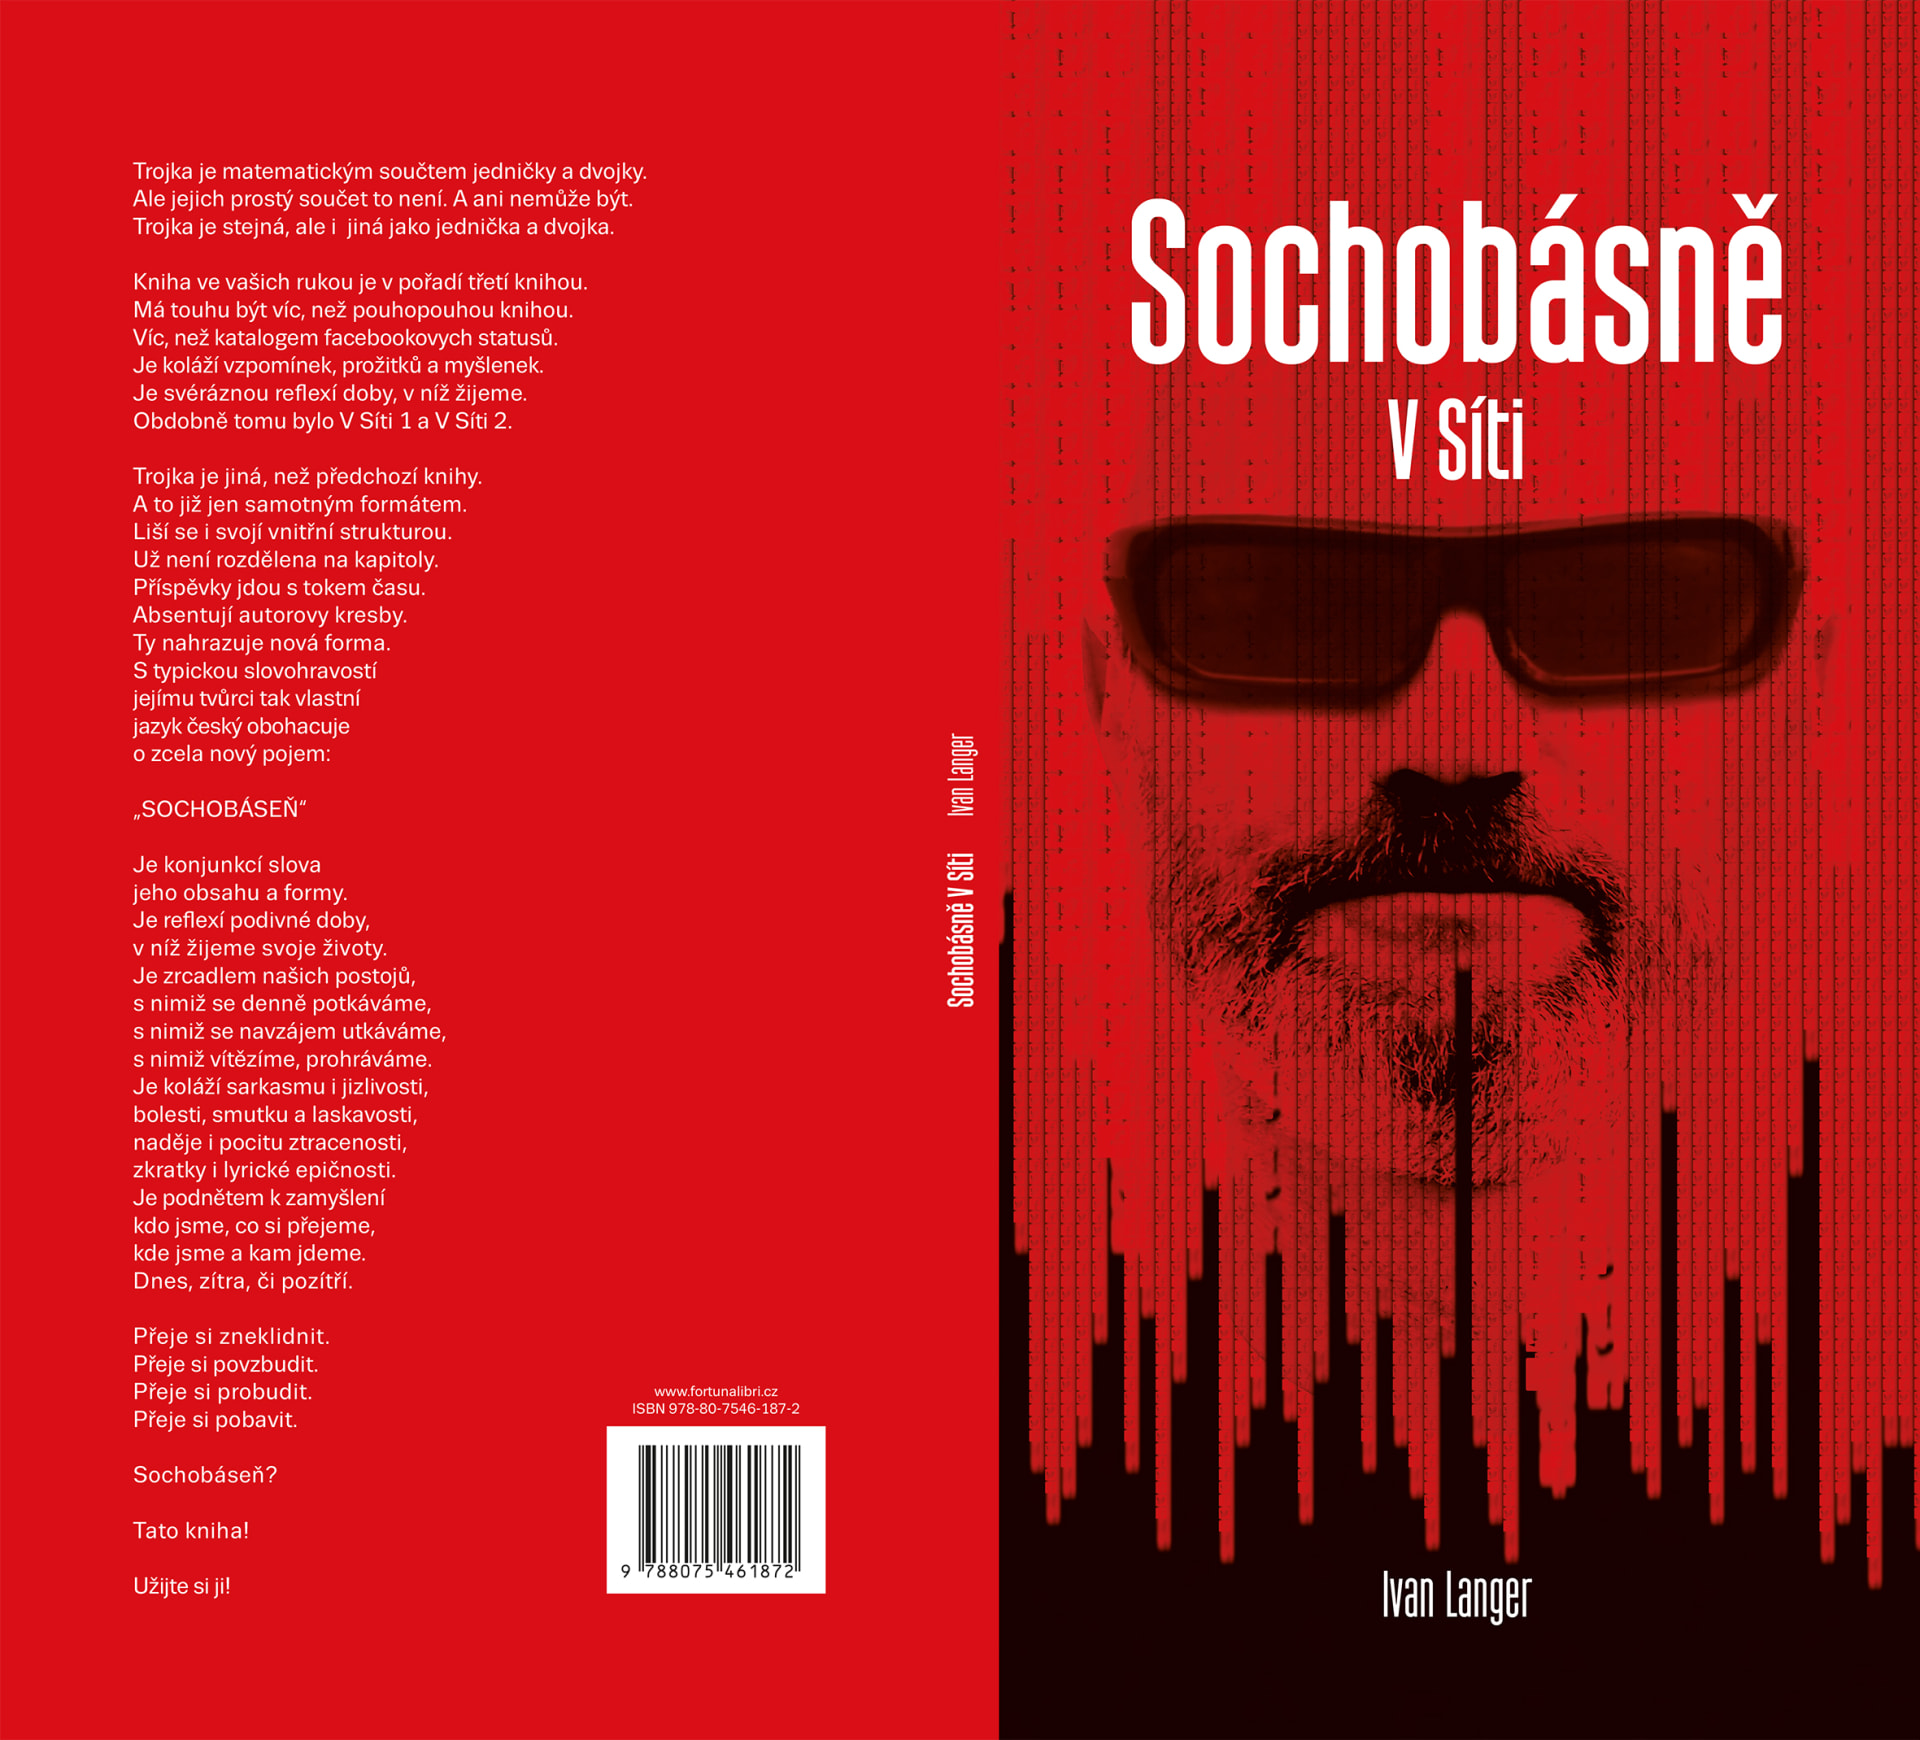 Ivan Langer vydává novou knihu nazvanou Sochobásně v síti.